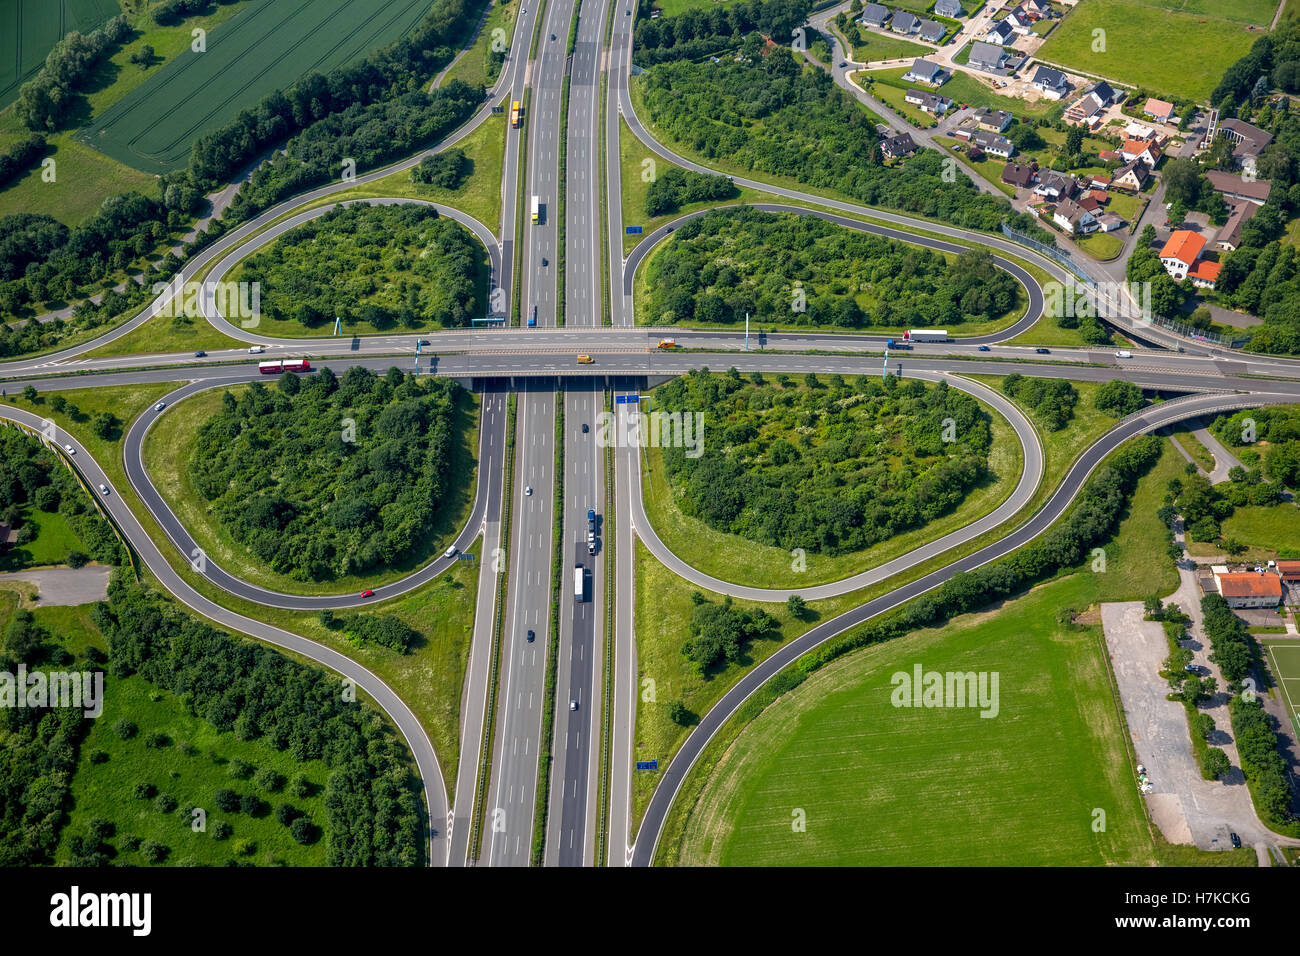 Intersección de la autopista A2 y la carretera principal B239 entre Herford y Bad Salzuflen, trébol, puente carretero Foto de stock